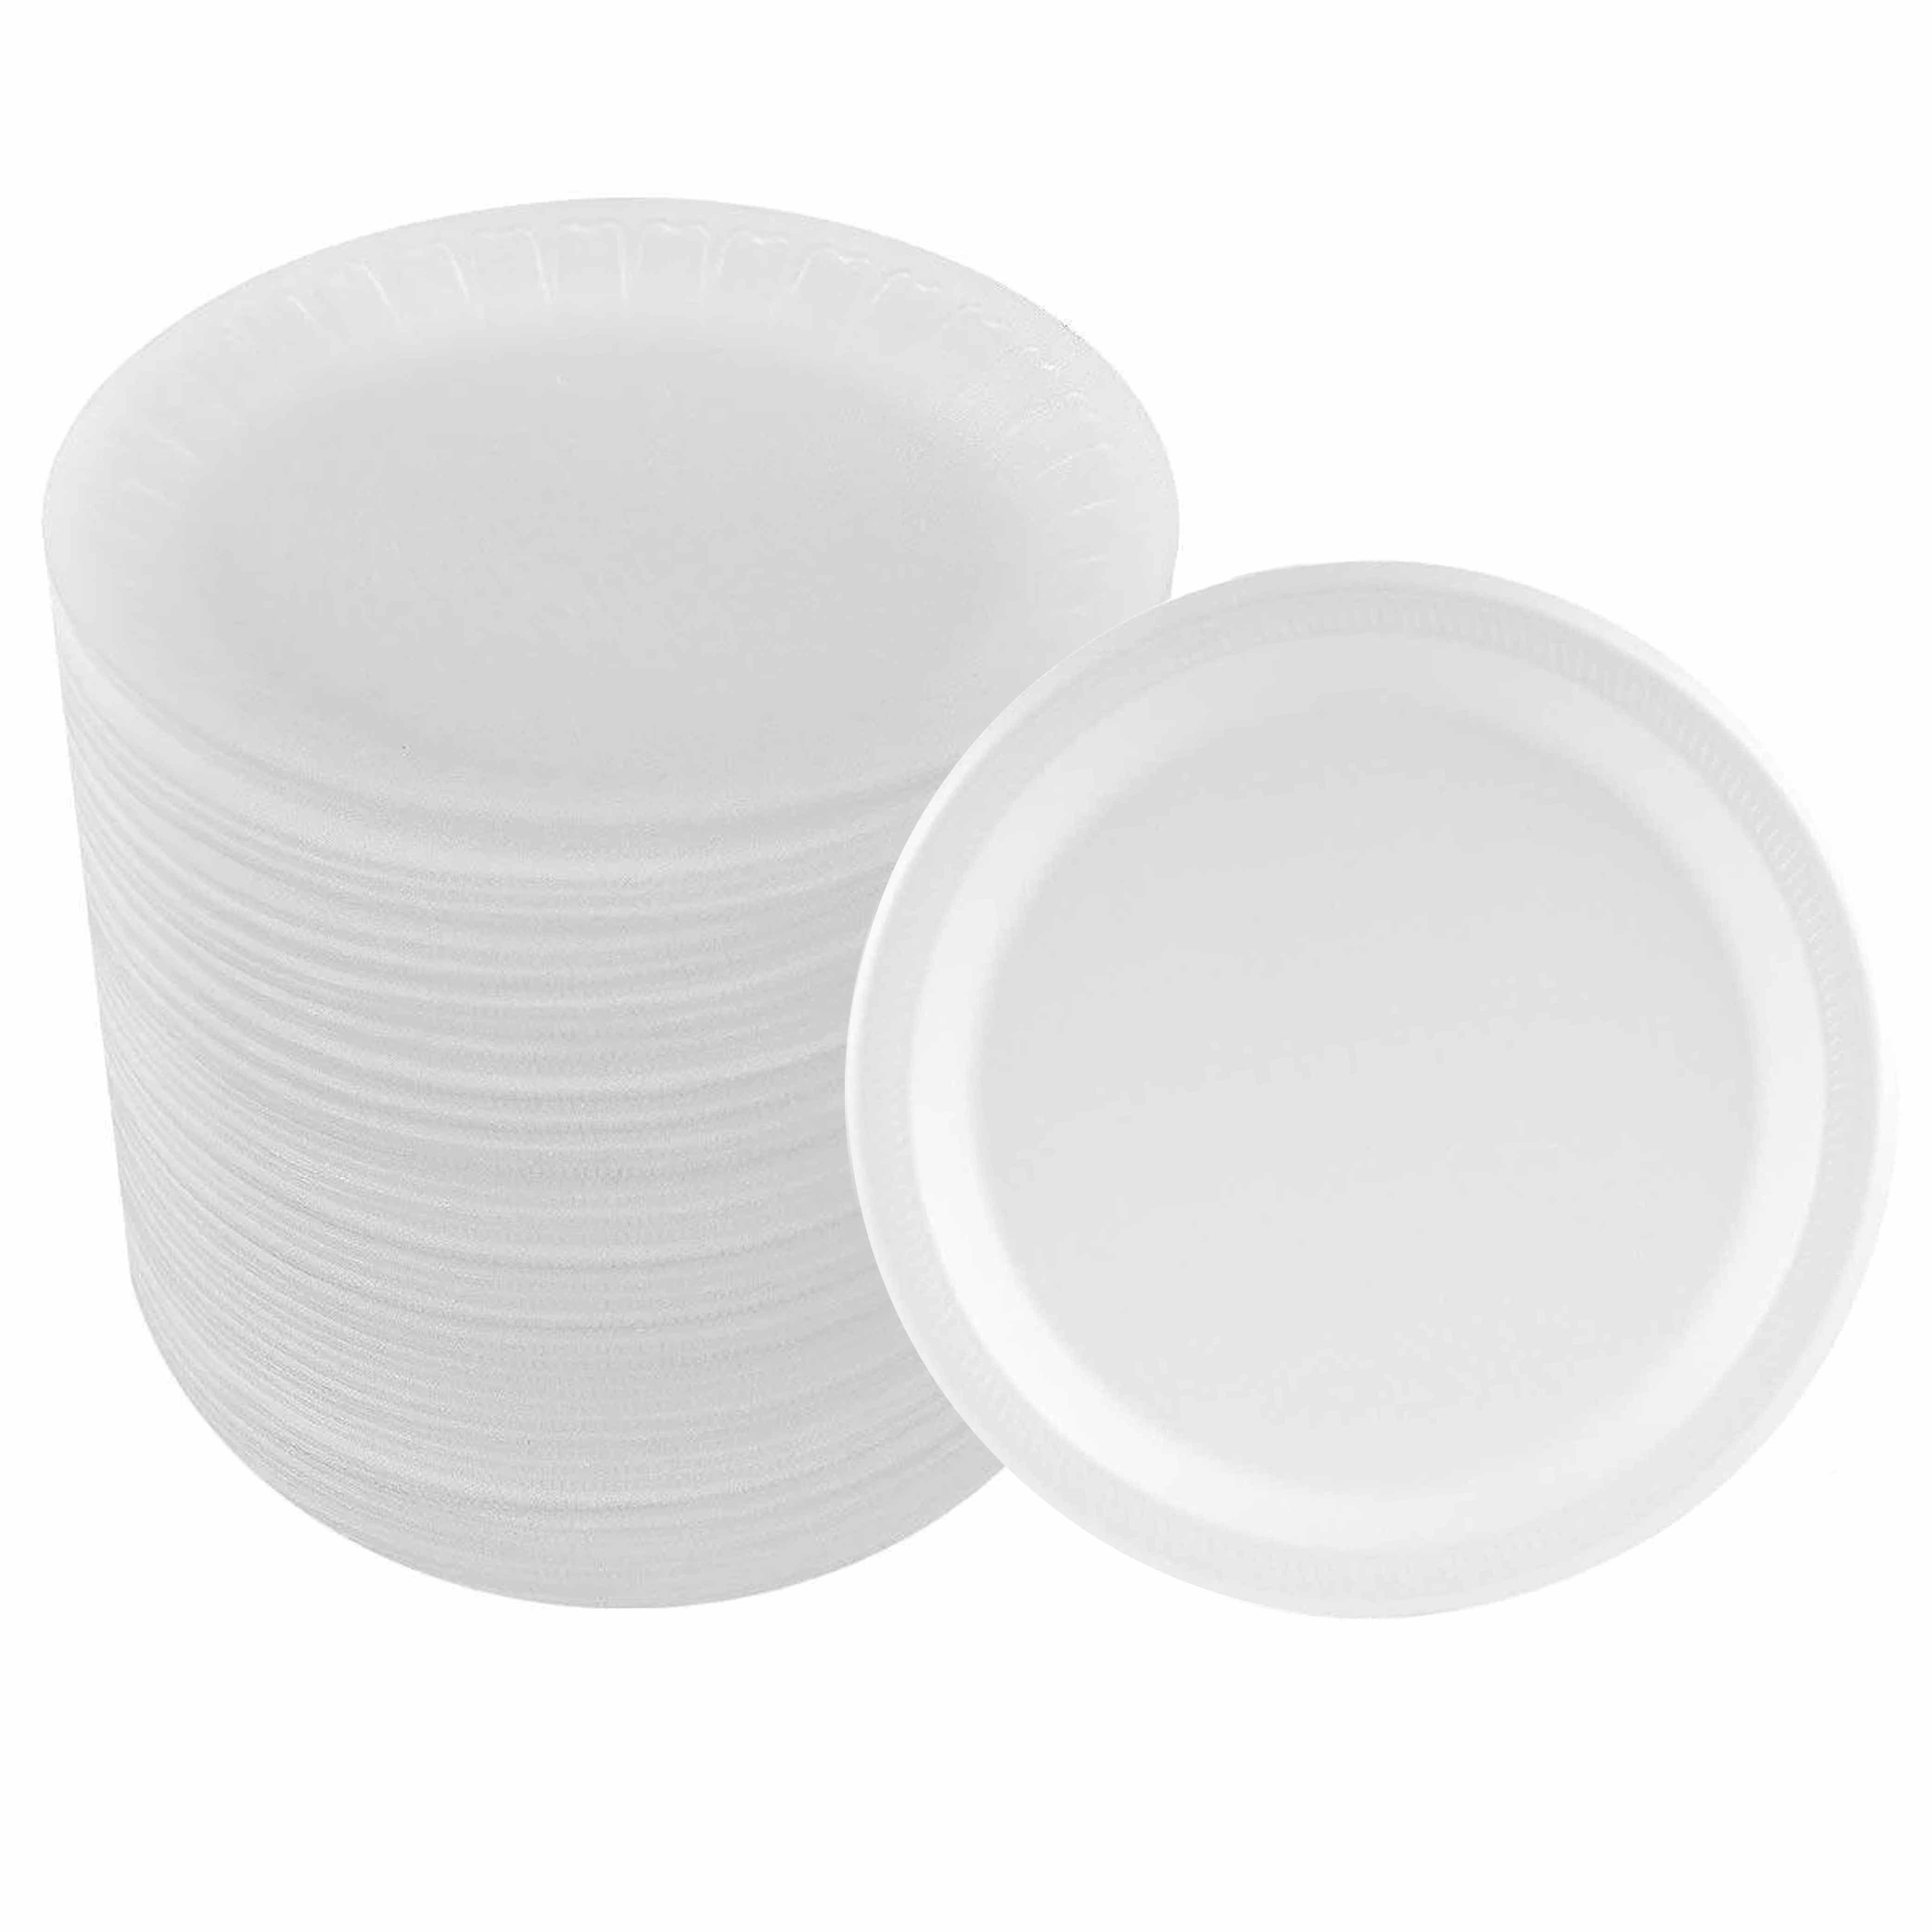 Meijer Soak Proof Foam Plates, 50 Count